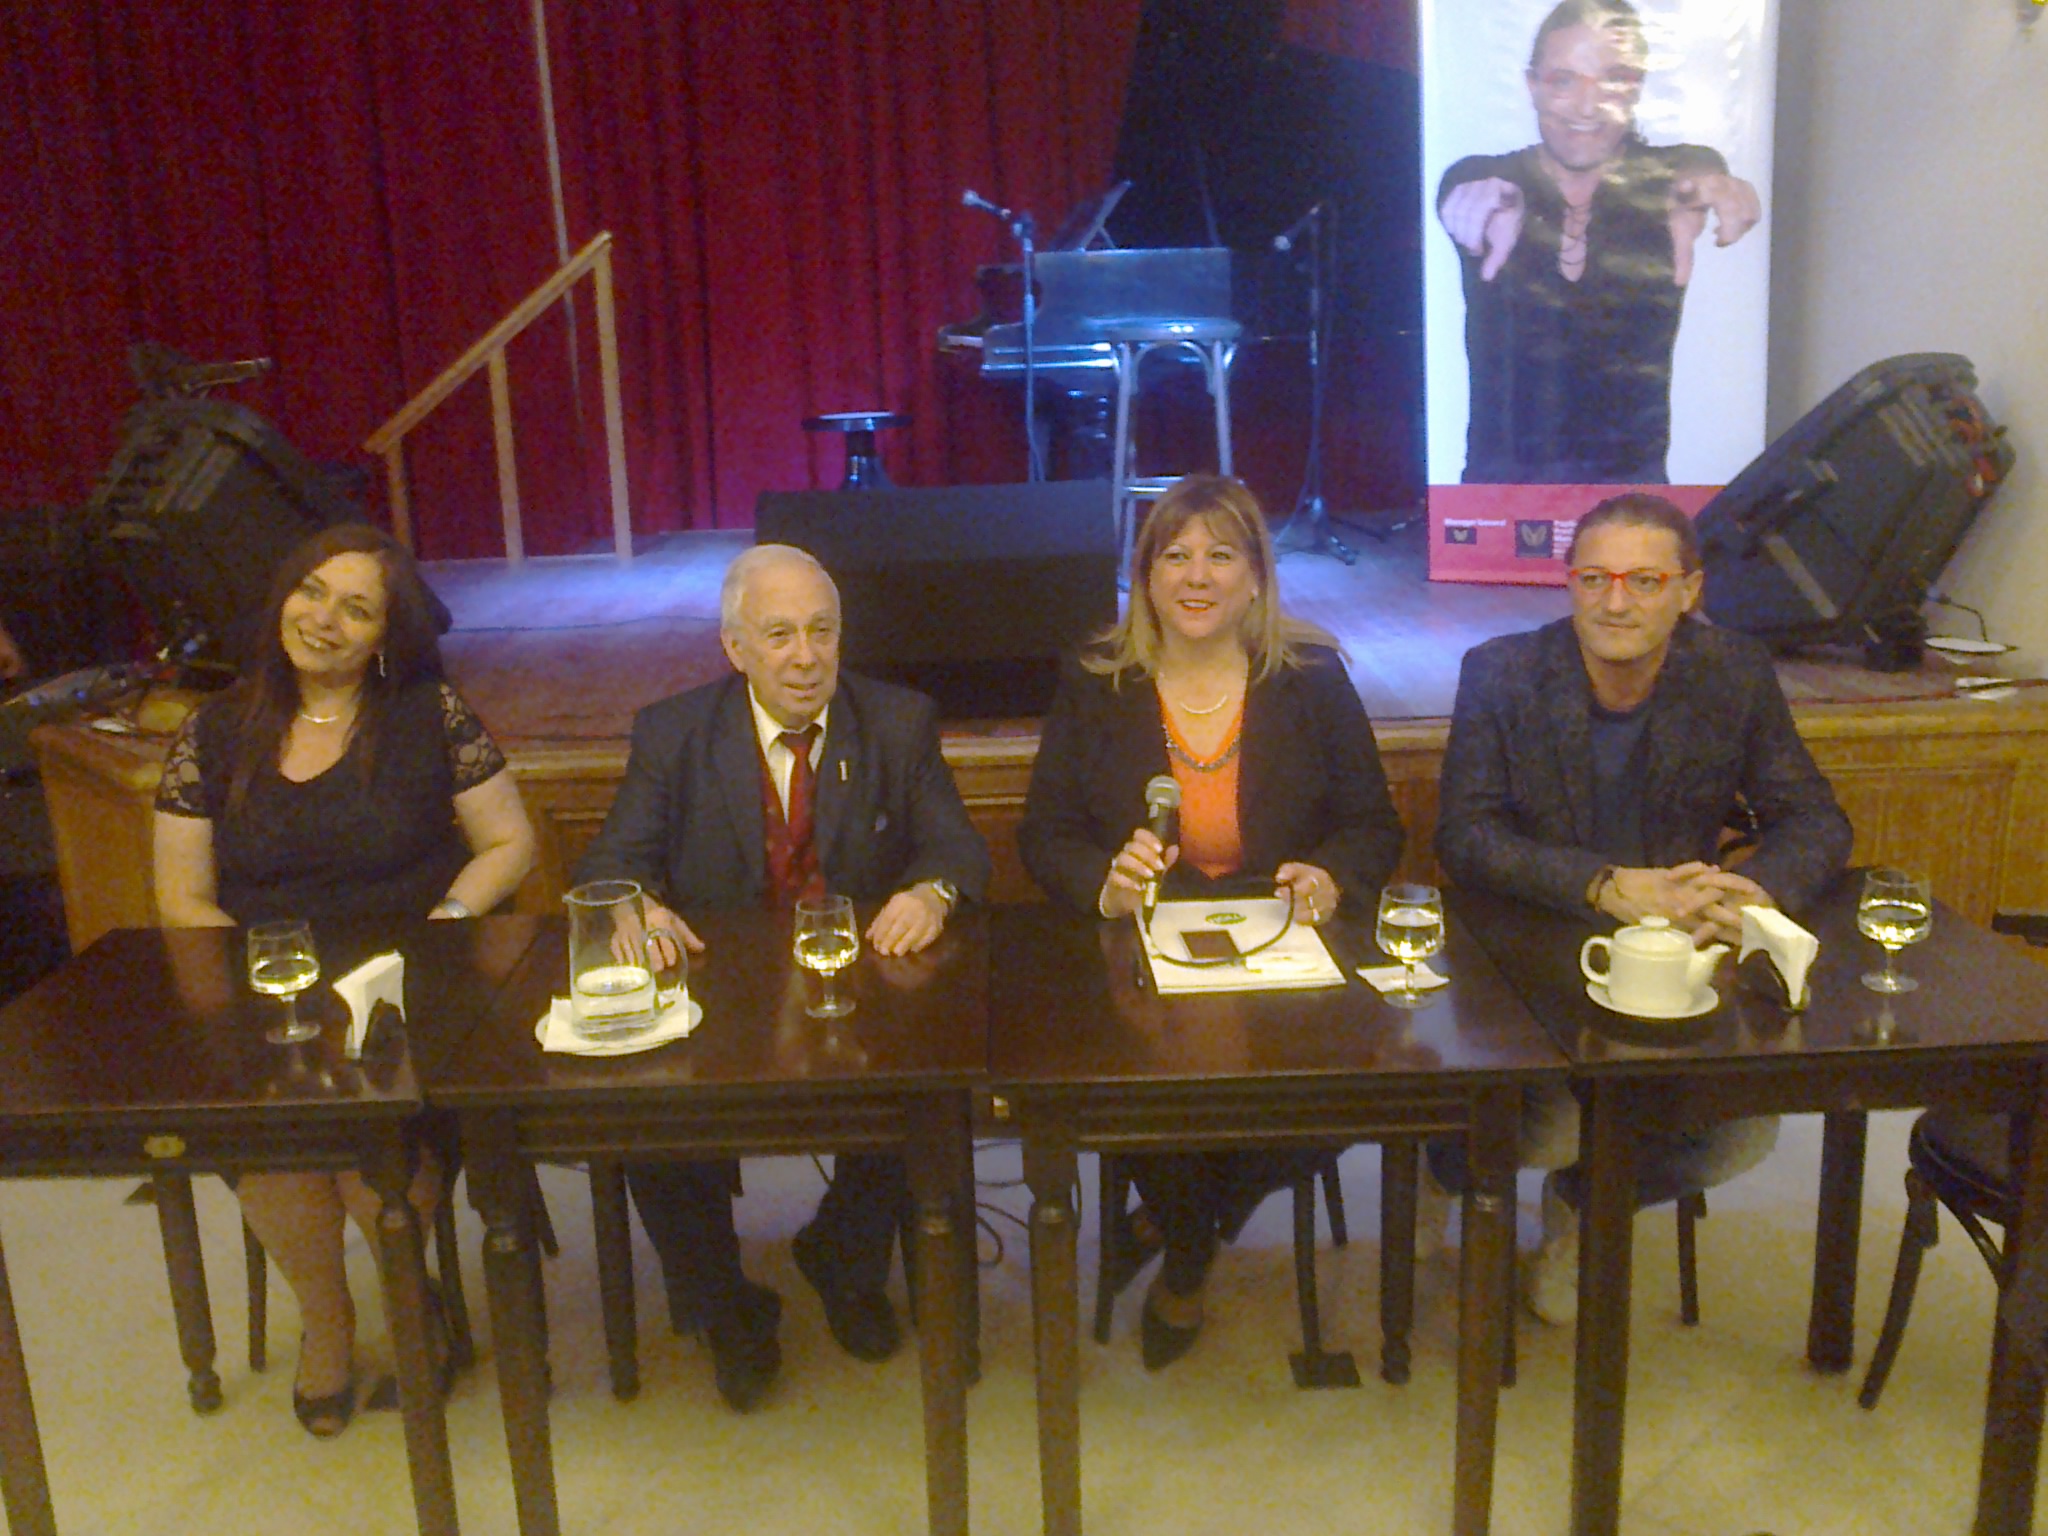 Conferenza stampa premiazione orden del buzon, nella foto: Gabriella Malusa, Carlos Osvaldo Crespo, Cristina Borruto, Marco Nodari